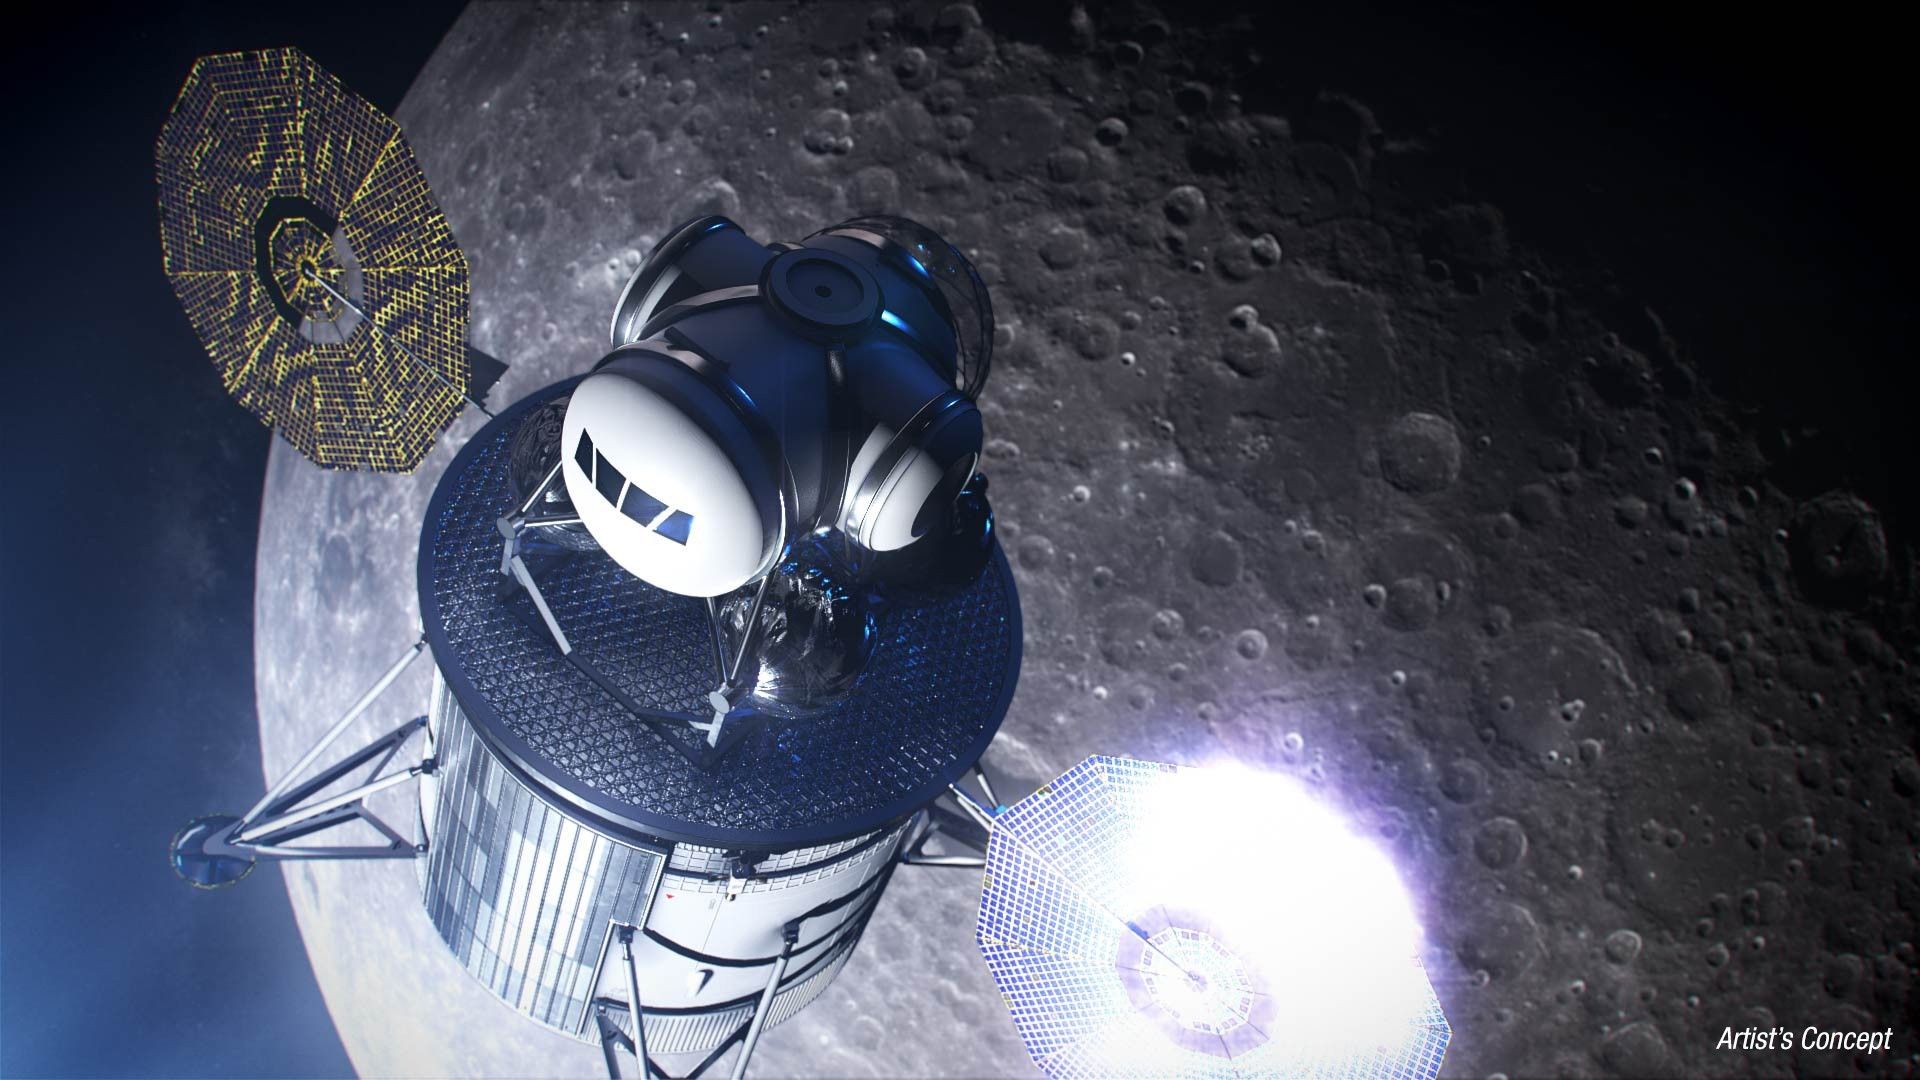 Artystyczna wizualizacja załogowego lądownika księżycowego. Ilustracja: NASA